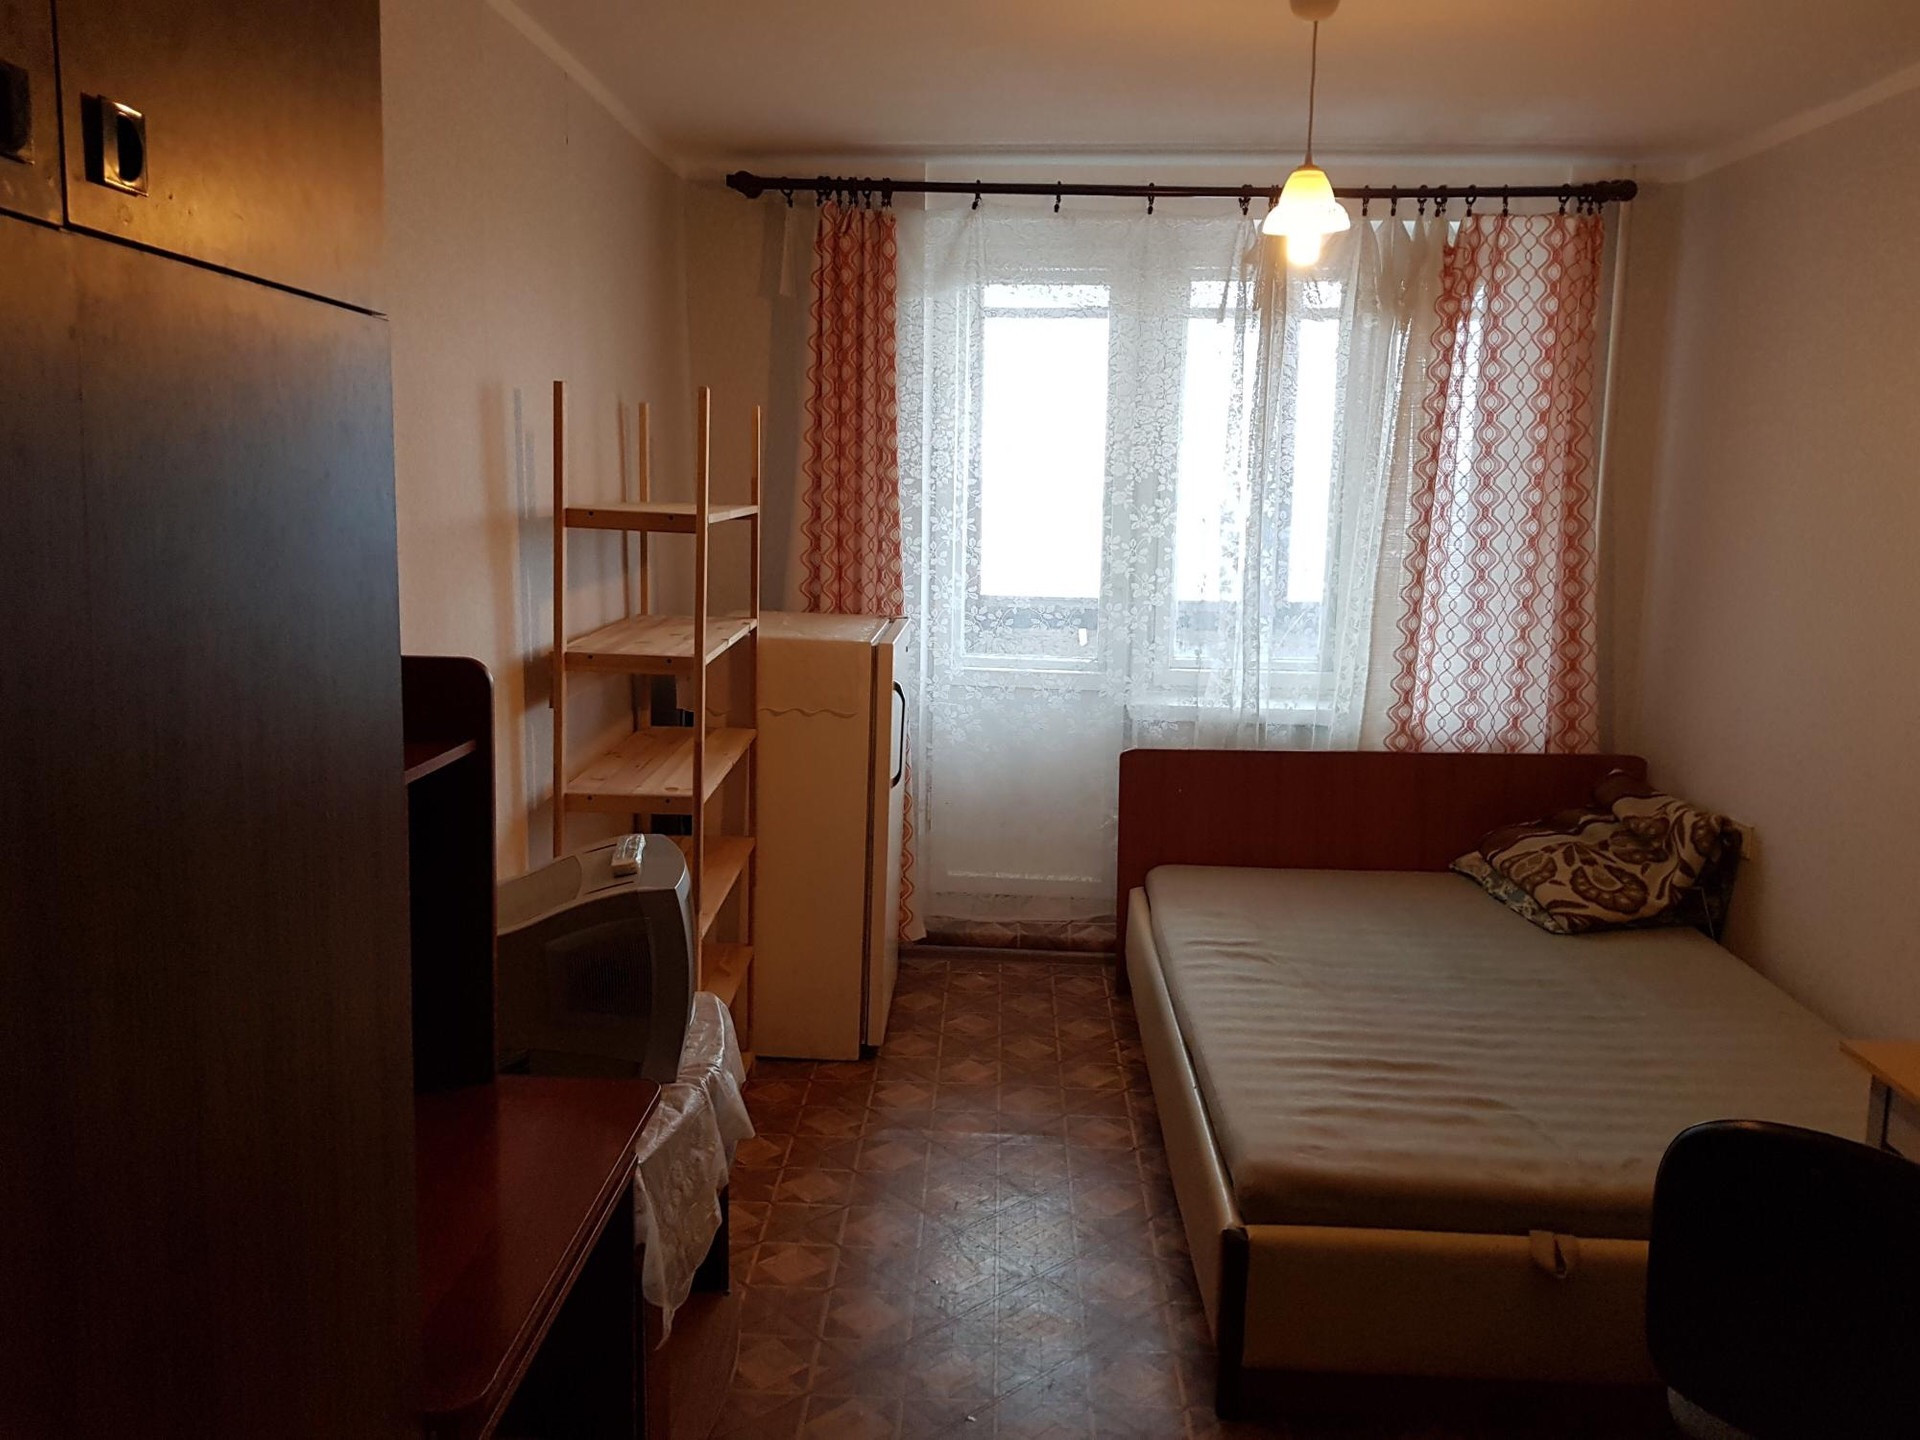 Комнаты в общежитии ульяновск. Комната в общежитии. Спальня в общежитии. Фотографии комнаты в общежитии. Благоустроенная комната в общежитии.